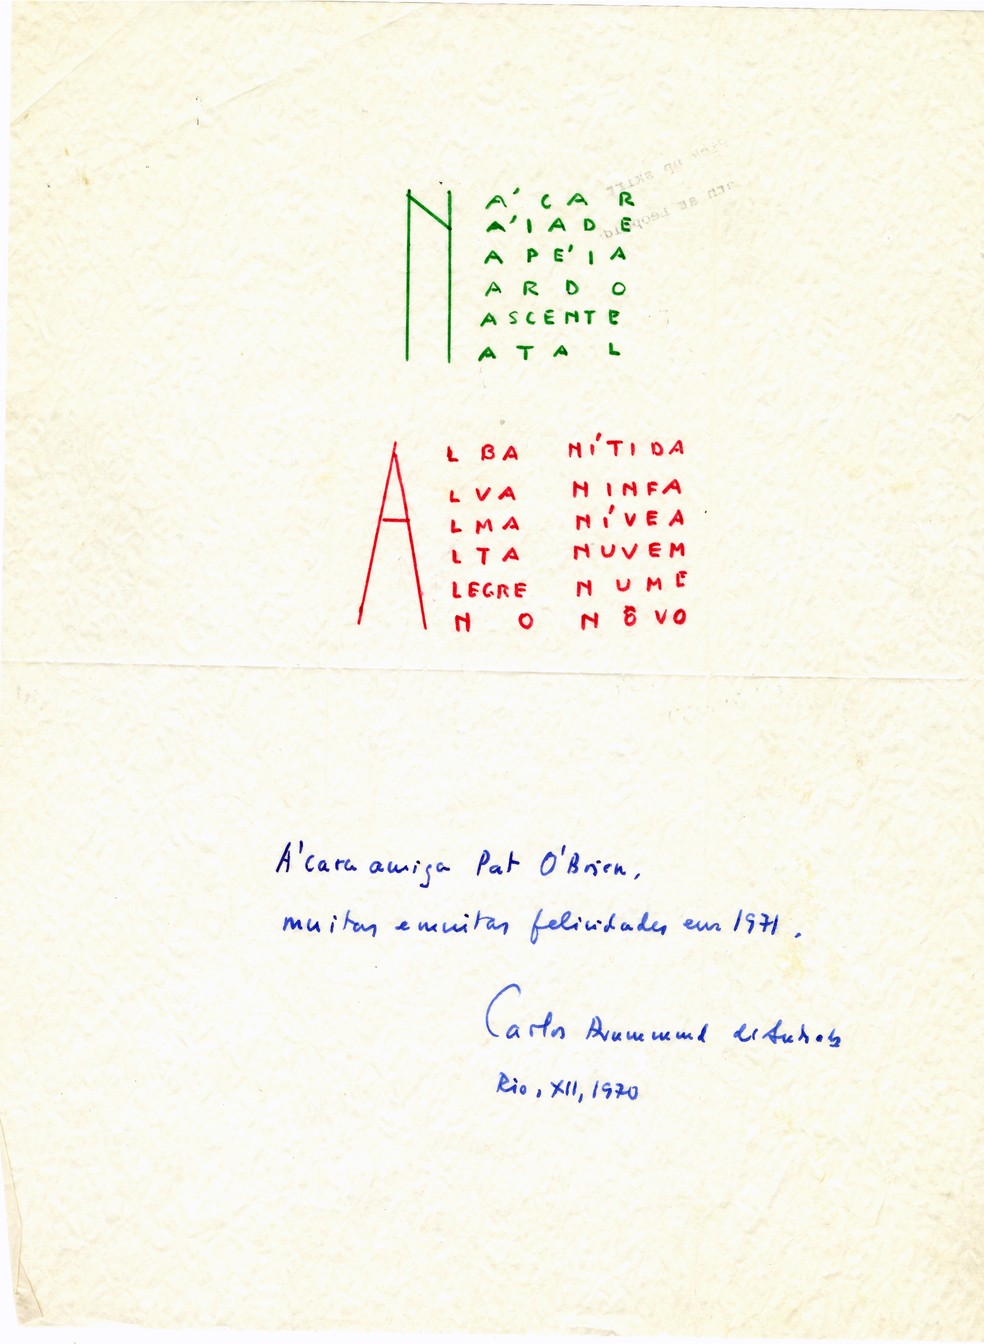 Carta enviada por Carlos Drummond de Andrade à pesquisadora americana Patricia O'Brien em dezembro de 1970 — Foto: Biblioteca Latino-Americana da Universidade de Tulane (EUA)